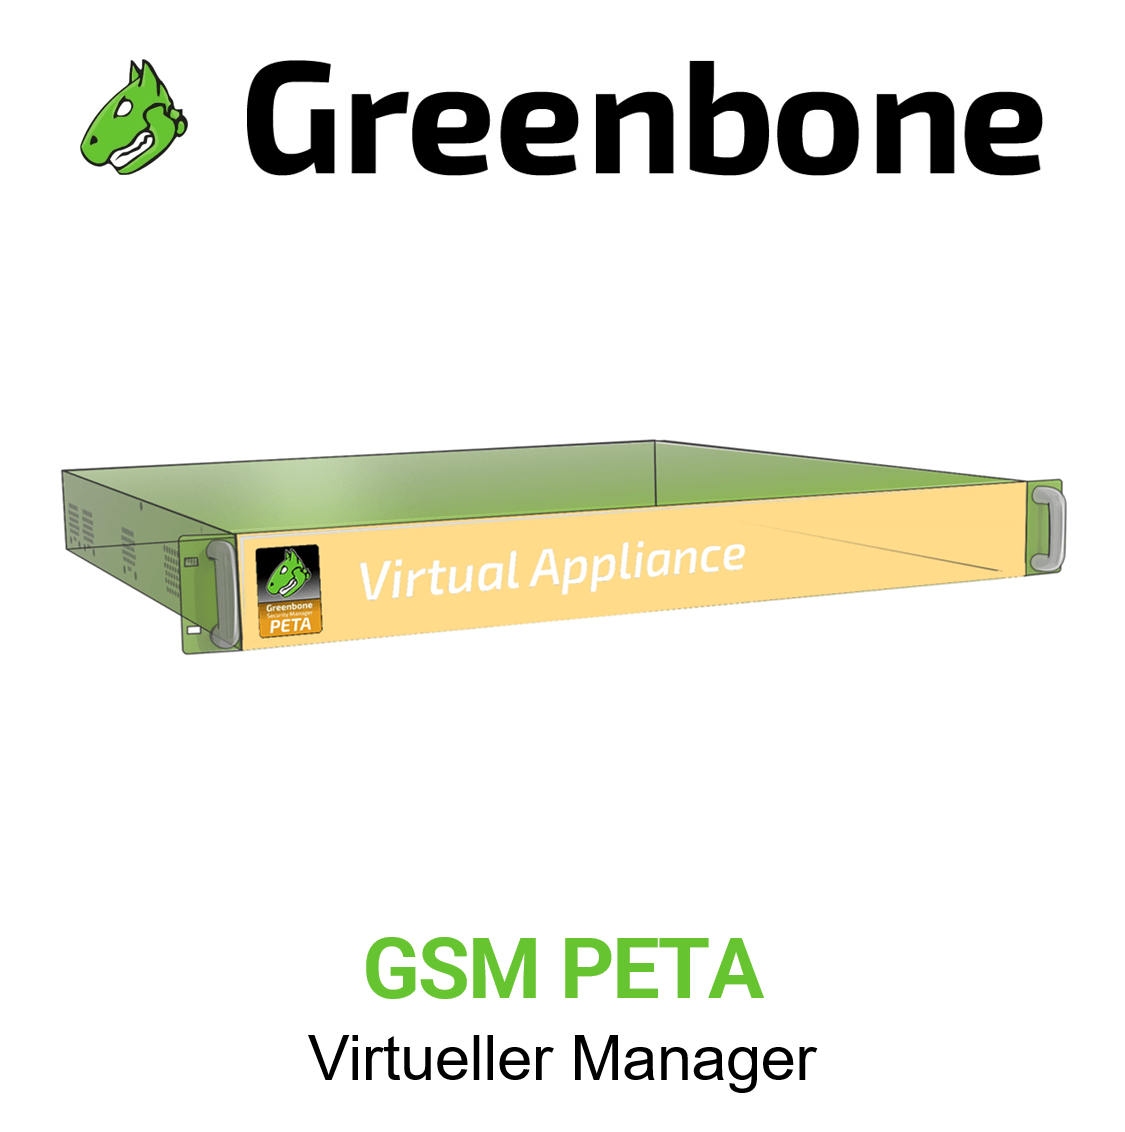 Greenbone GSM-PETA Virtuelle Appliance Vorschaubild mit Greenbone logo und Modellbezeichnung